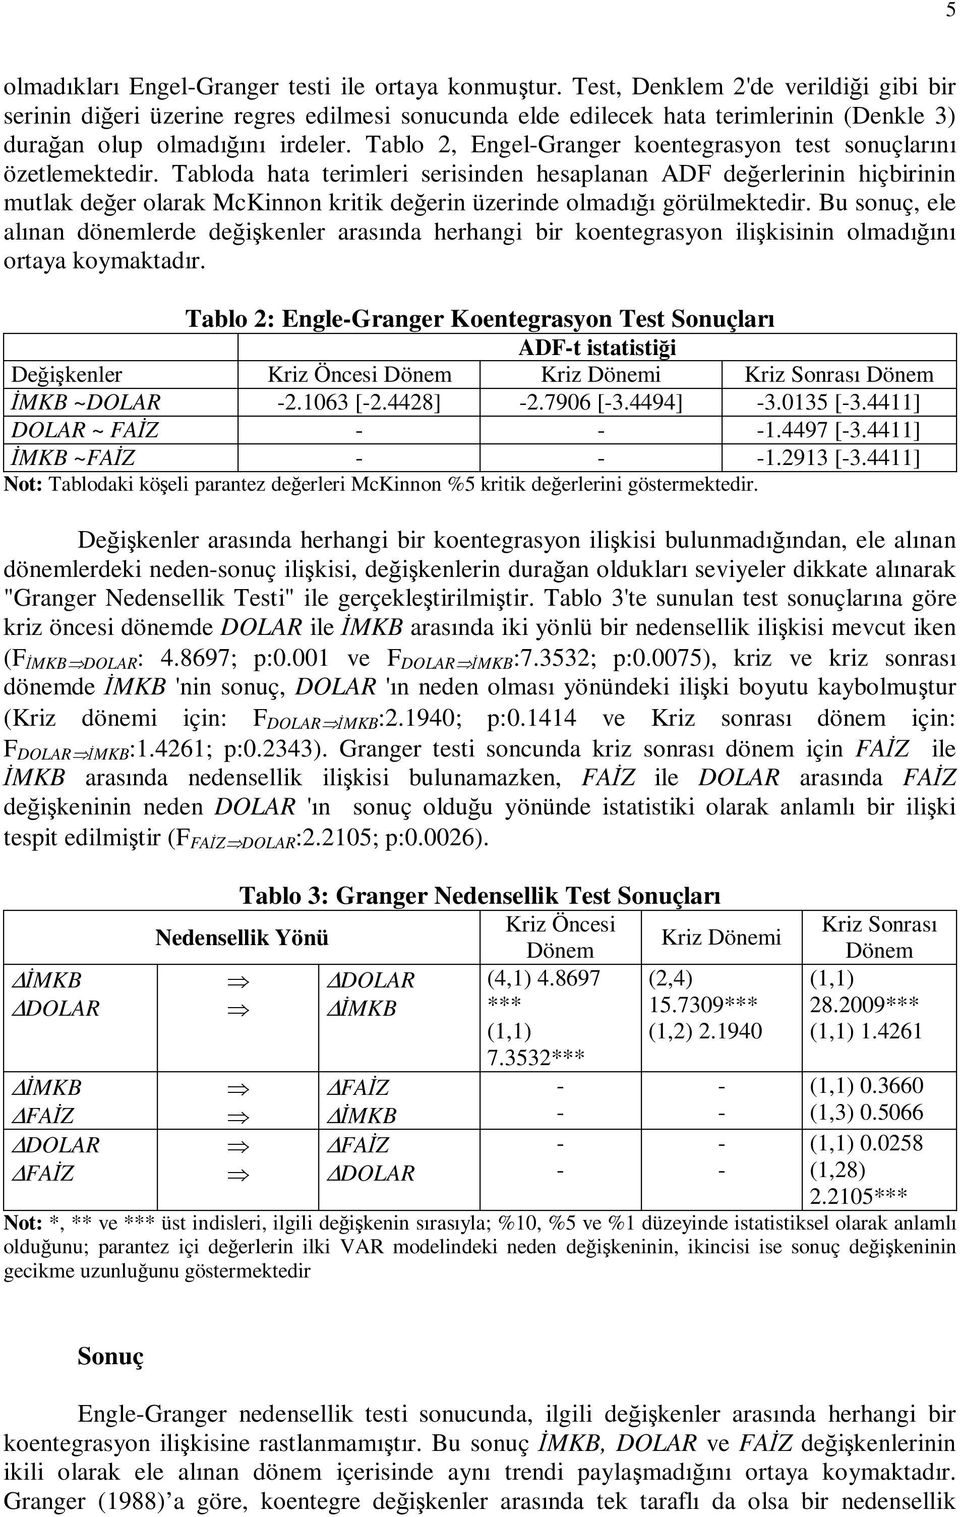 Tablo 2, EngelGranger koentegrasyon test sonuçlarını özetlemektedir.